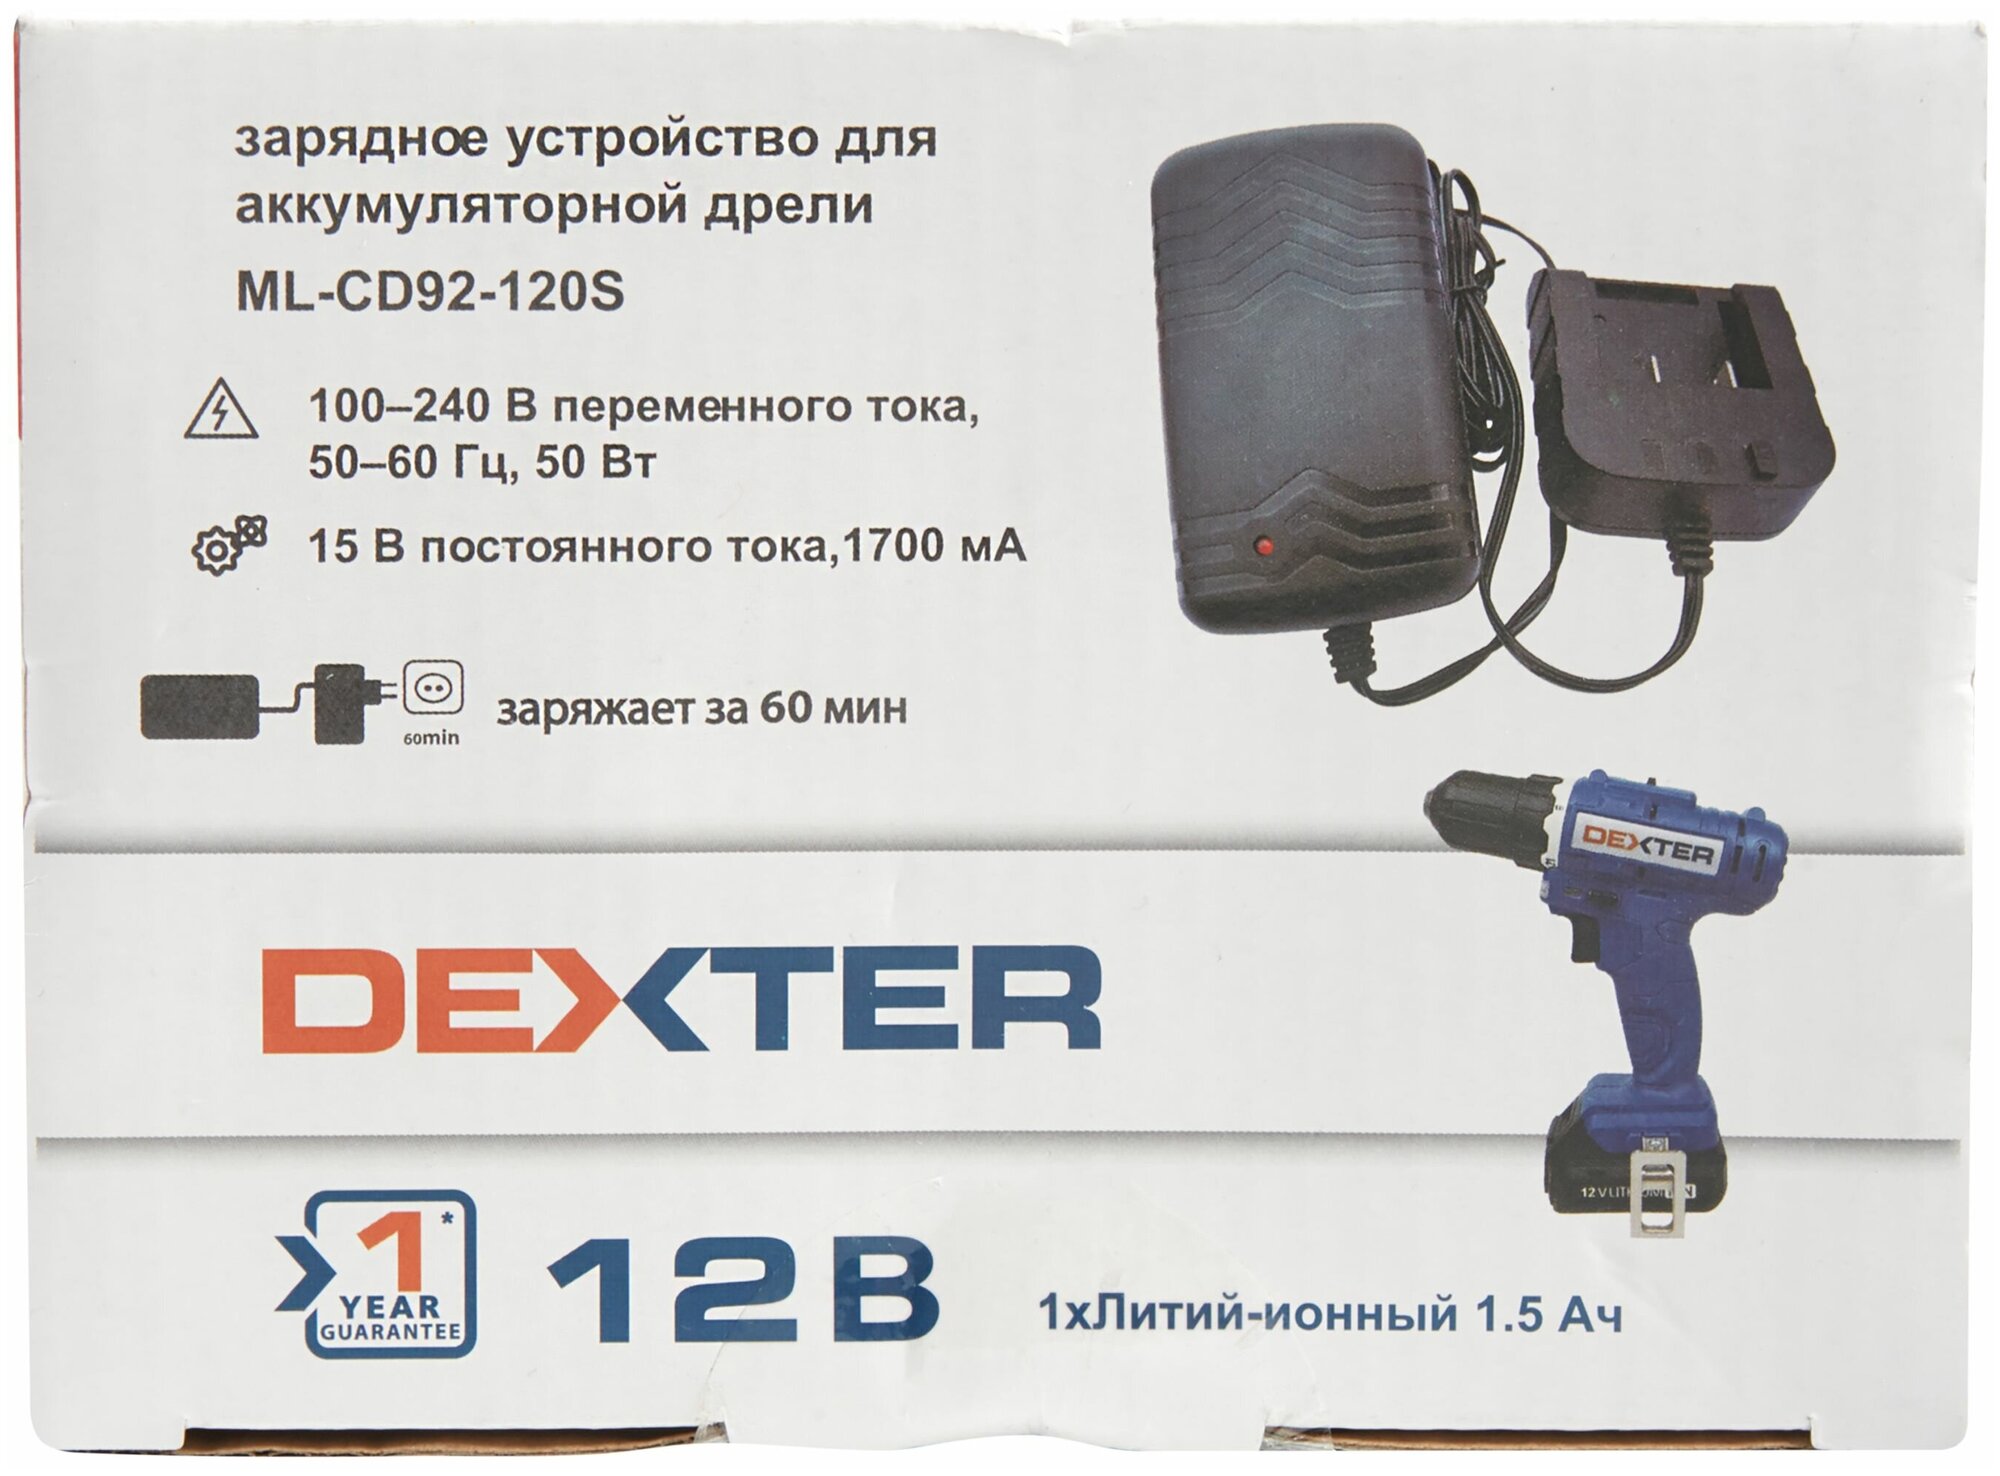 Зарядное устройство Dexter JLH291501700G1 12 В Li-ion